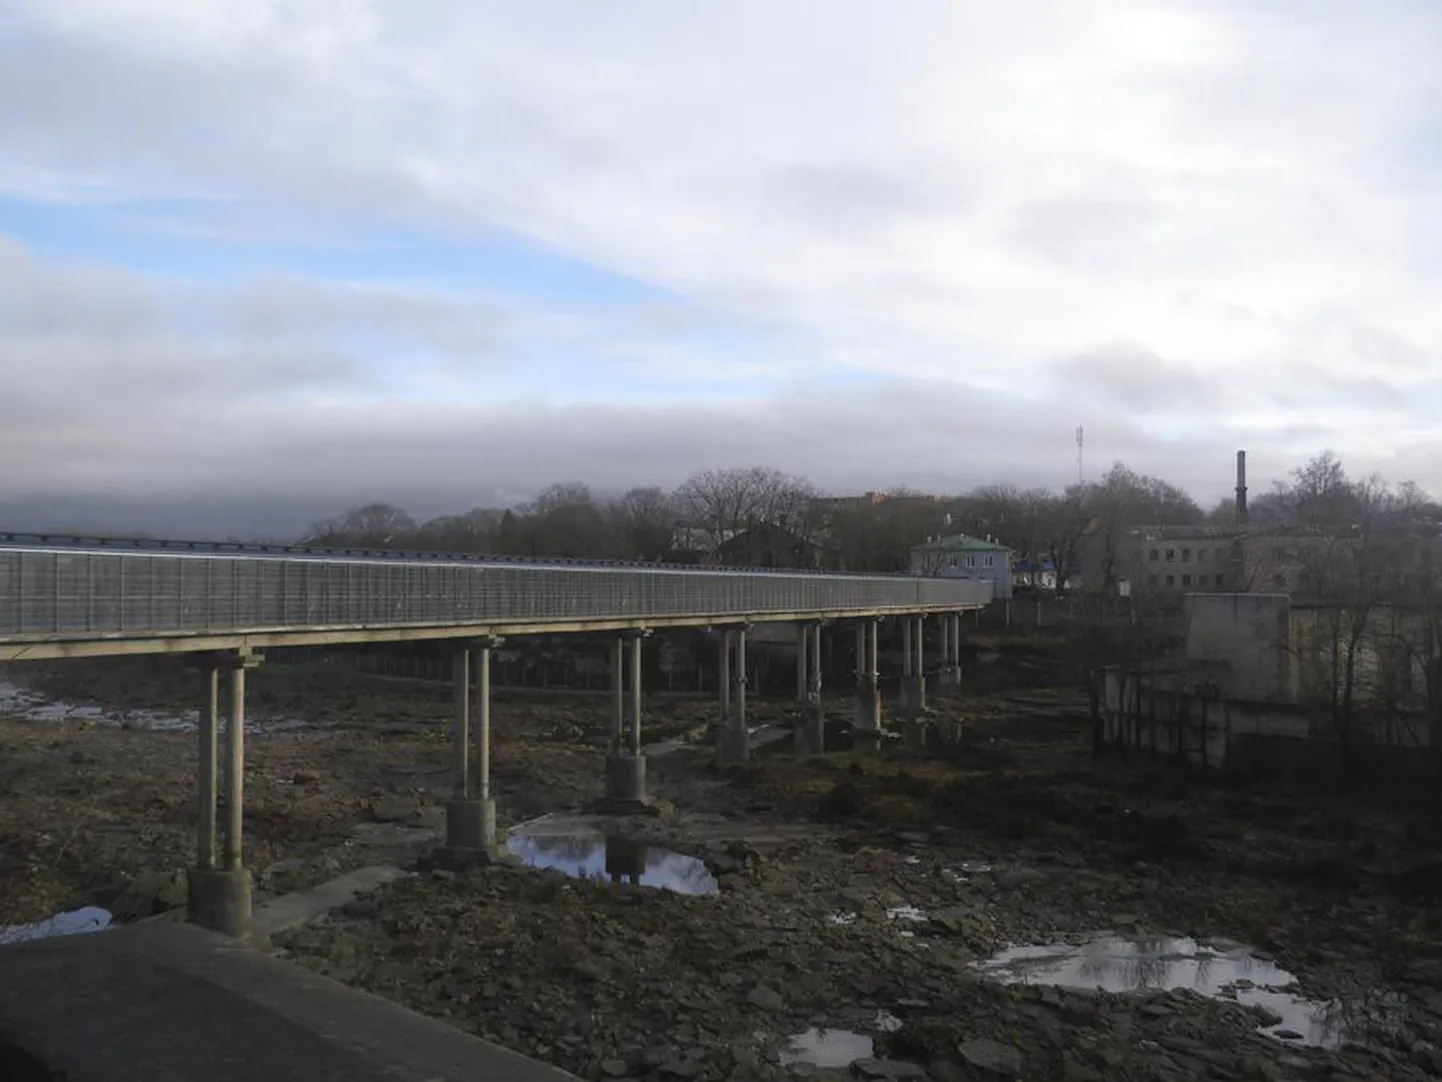 Hiljuti renoveeris osaühing Ehitus5ECO Riigi Kinnisvara aktsiaseltsi tellimusel Narva-2 piiripunkti. Alltöövõtjana osales mahukas ettevõtmises ka Viljandimaa firma AMV Metall, kes kattis üle jõesängi Venemaale viiva jalakäijate silla spetsiaalse kinnise galeriiga. Teine niisugune käigutee monteeriti Narva linnuse kõrvalt Jaanilinna viivale suure sillale.